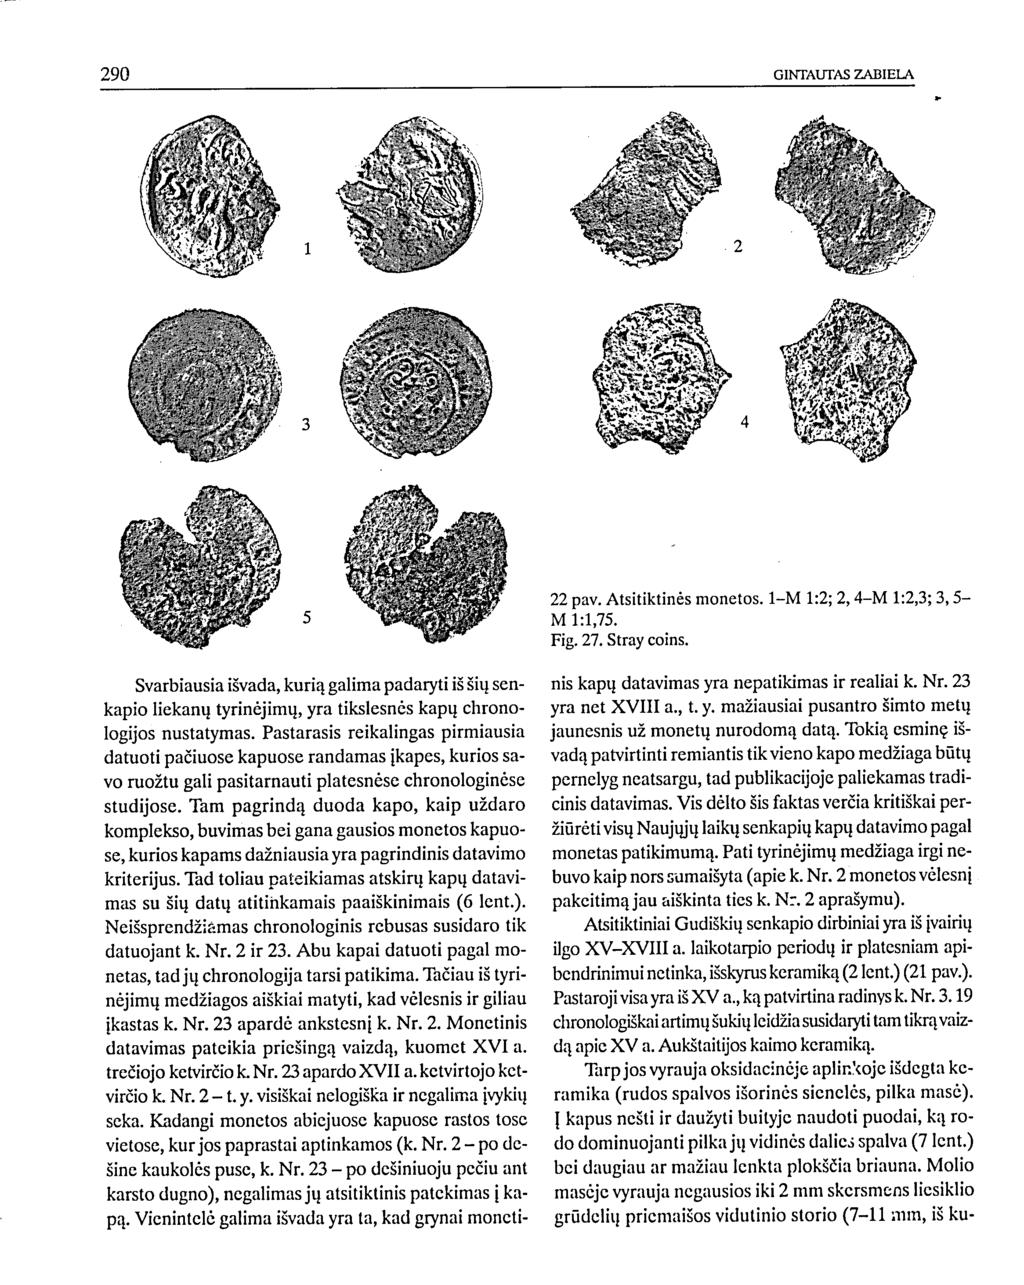 22 pav. Atsitiktinės monetos. 1-M 1:2; 2,4-M 1:2,3; 3,5- M 1:1,75. Fig. 27. Stray coins.